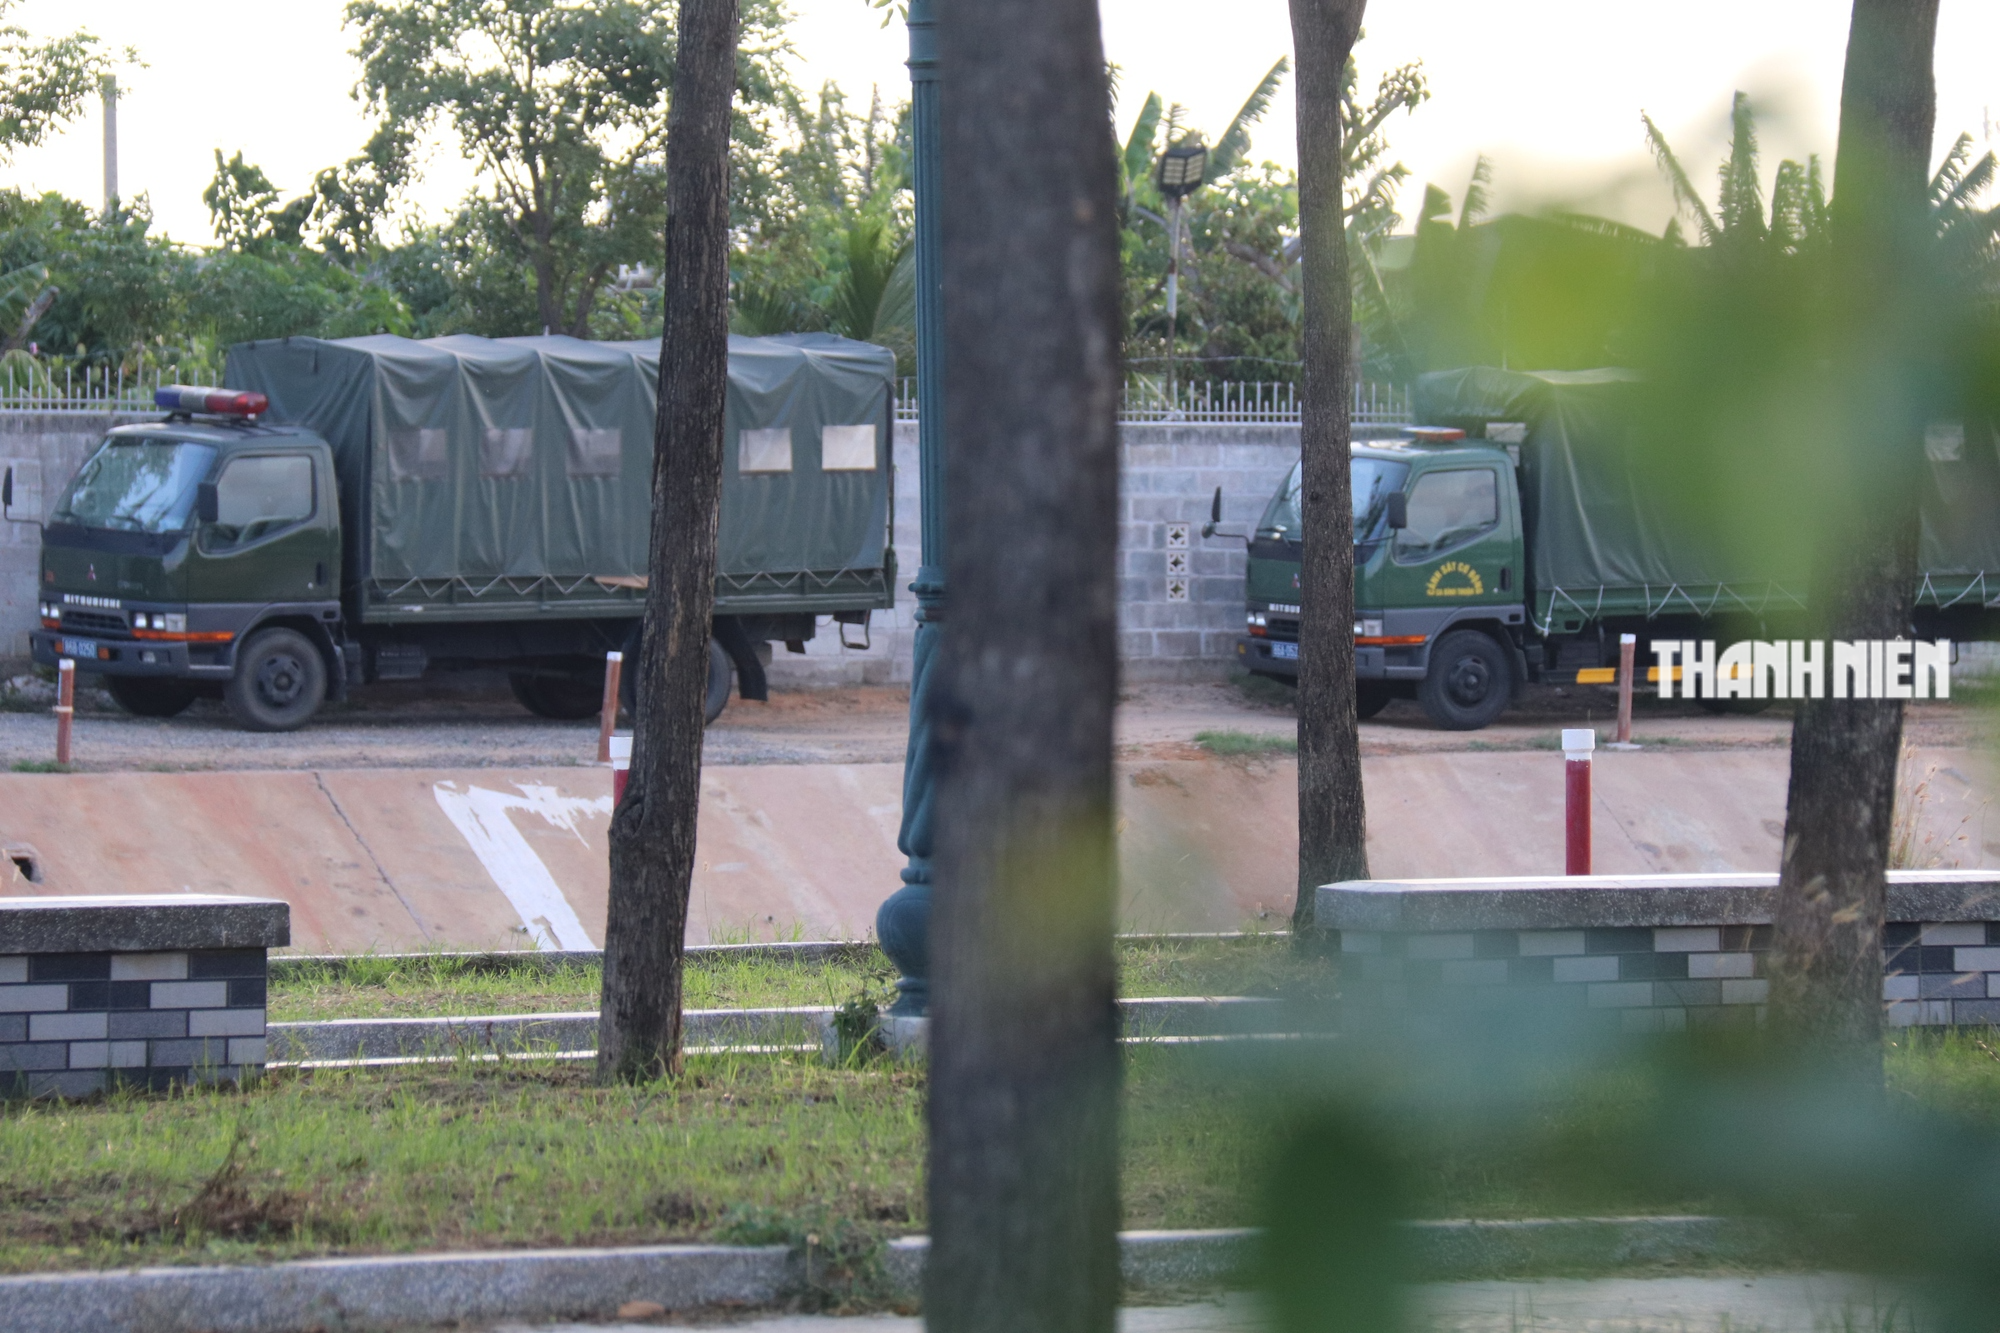 Bộ Công an đã bắt được Thảo ‘lụi’, trùm giang hồ ở Bình Thuận